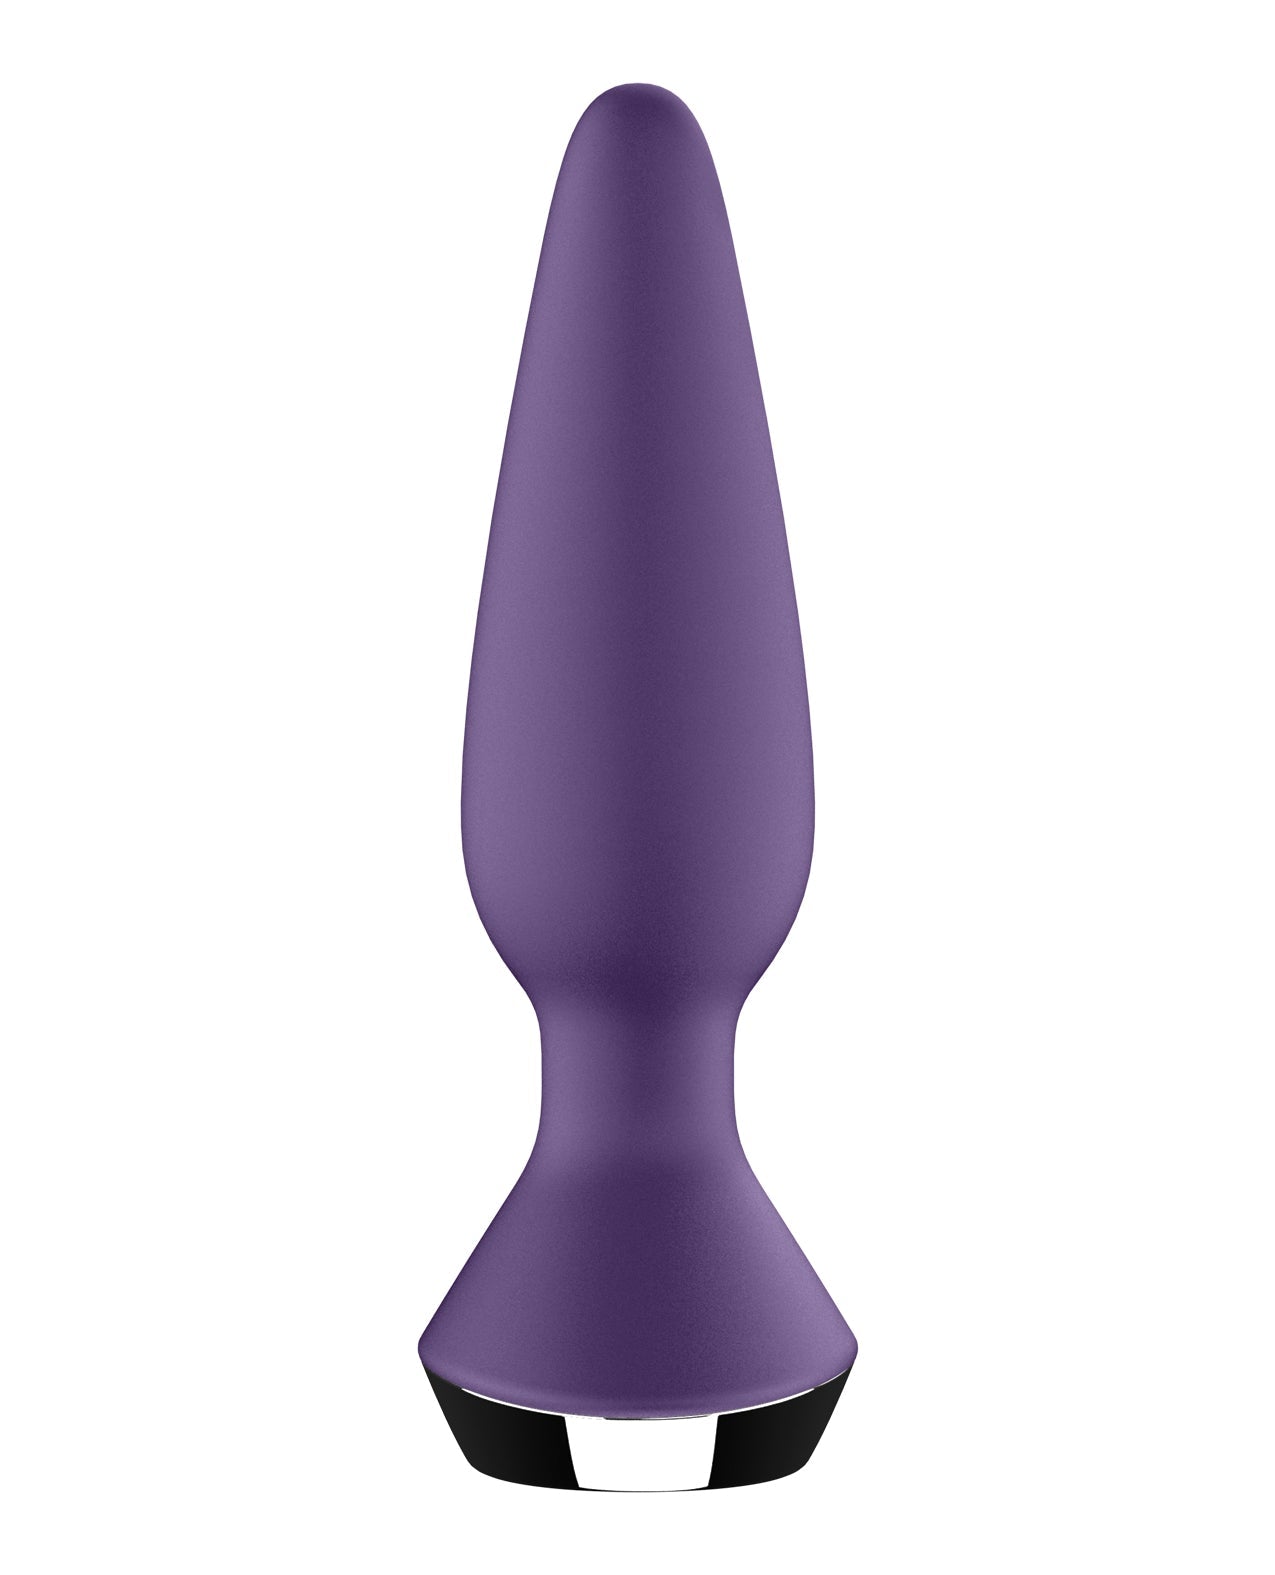 Satisfyer Plug-ilicious 1 - Purple